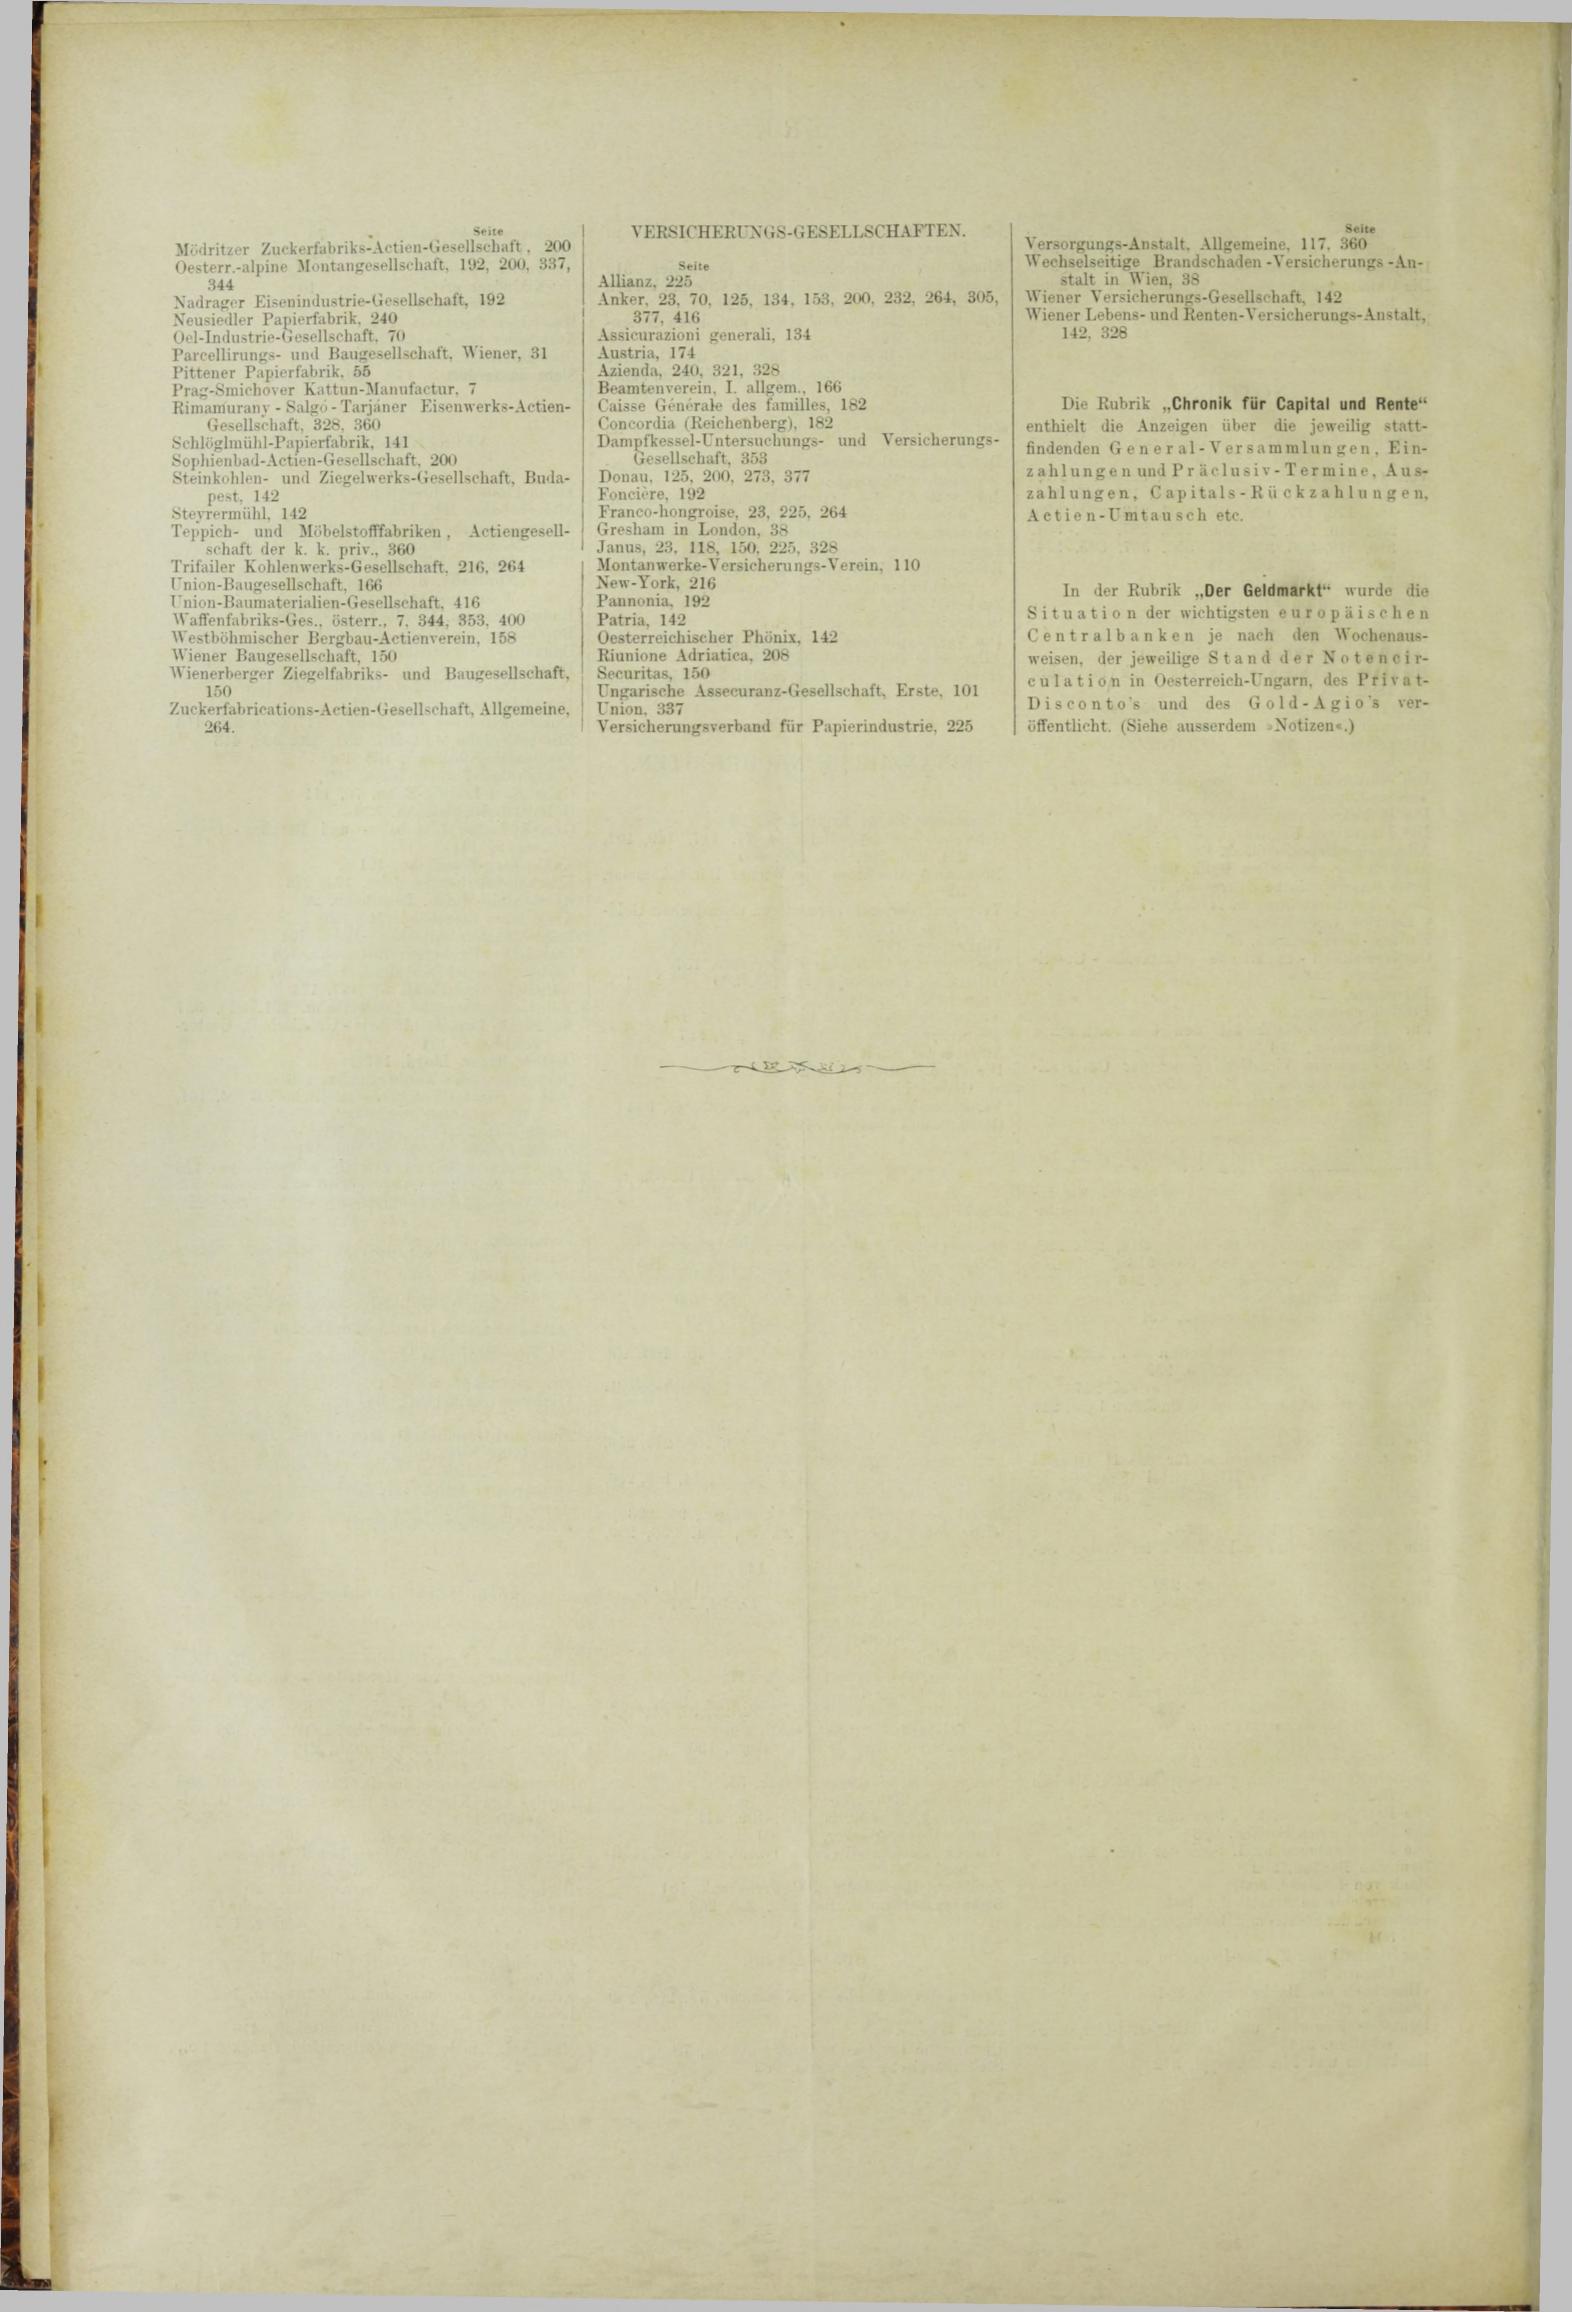 Der Tresor 20.12.1883 - Seite 12